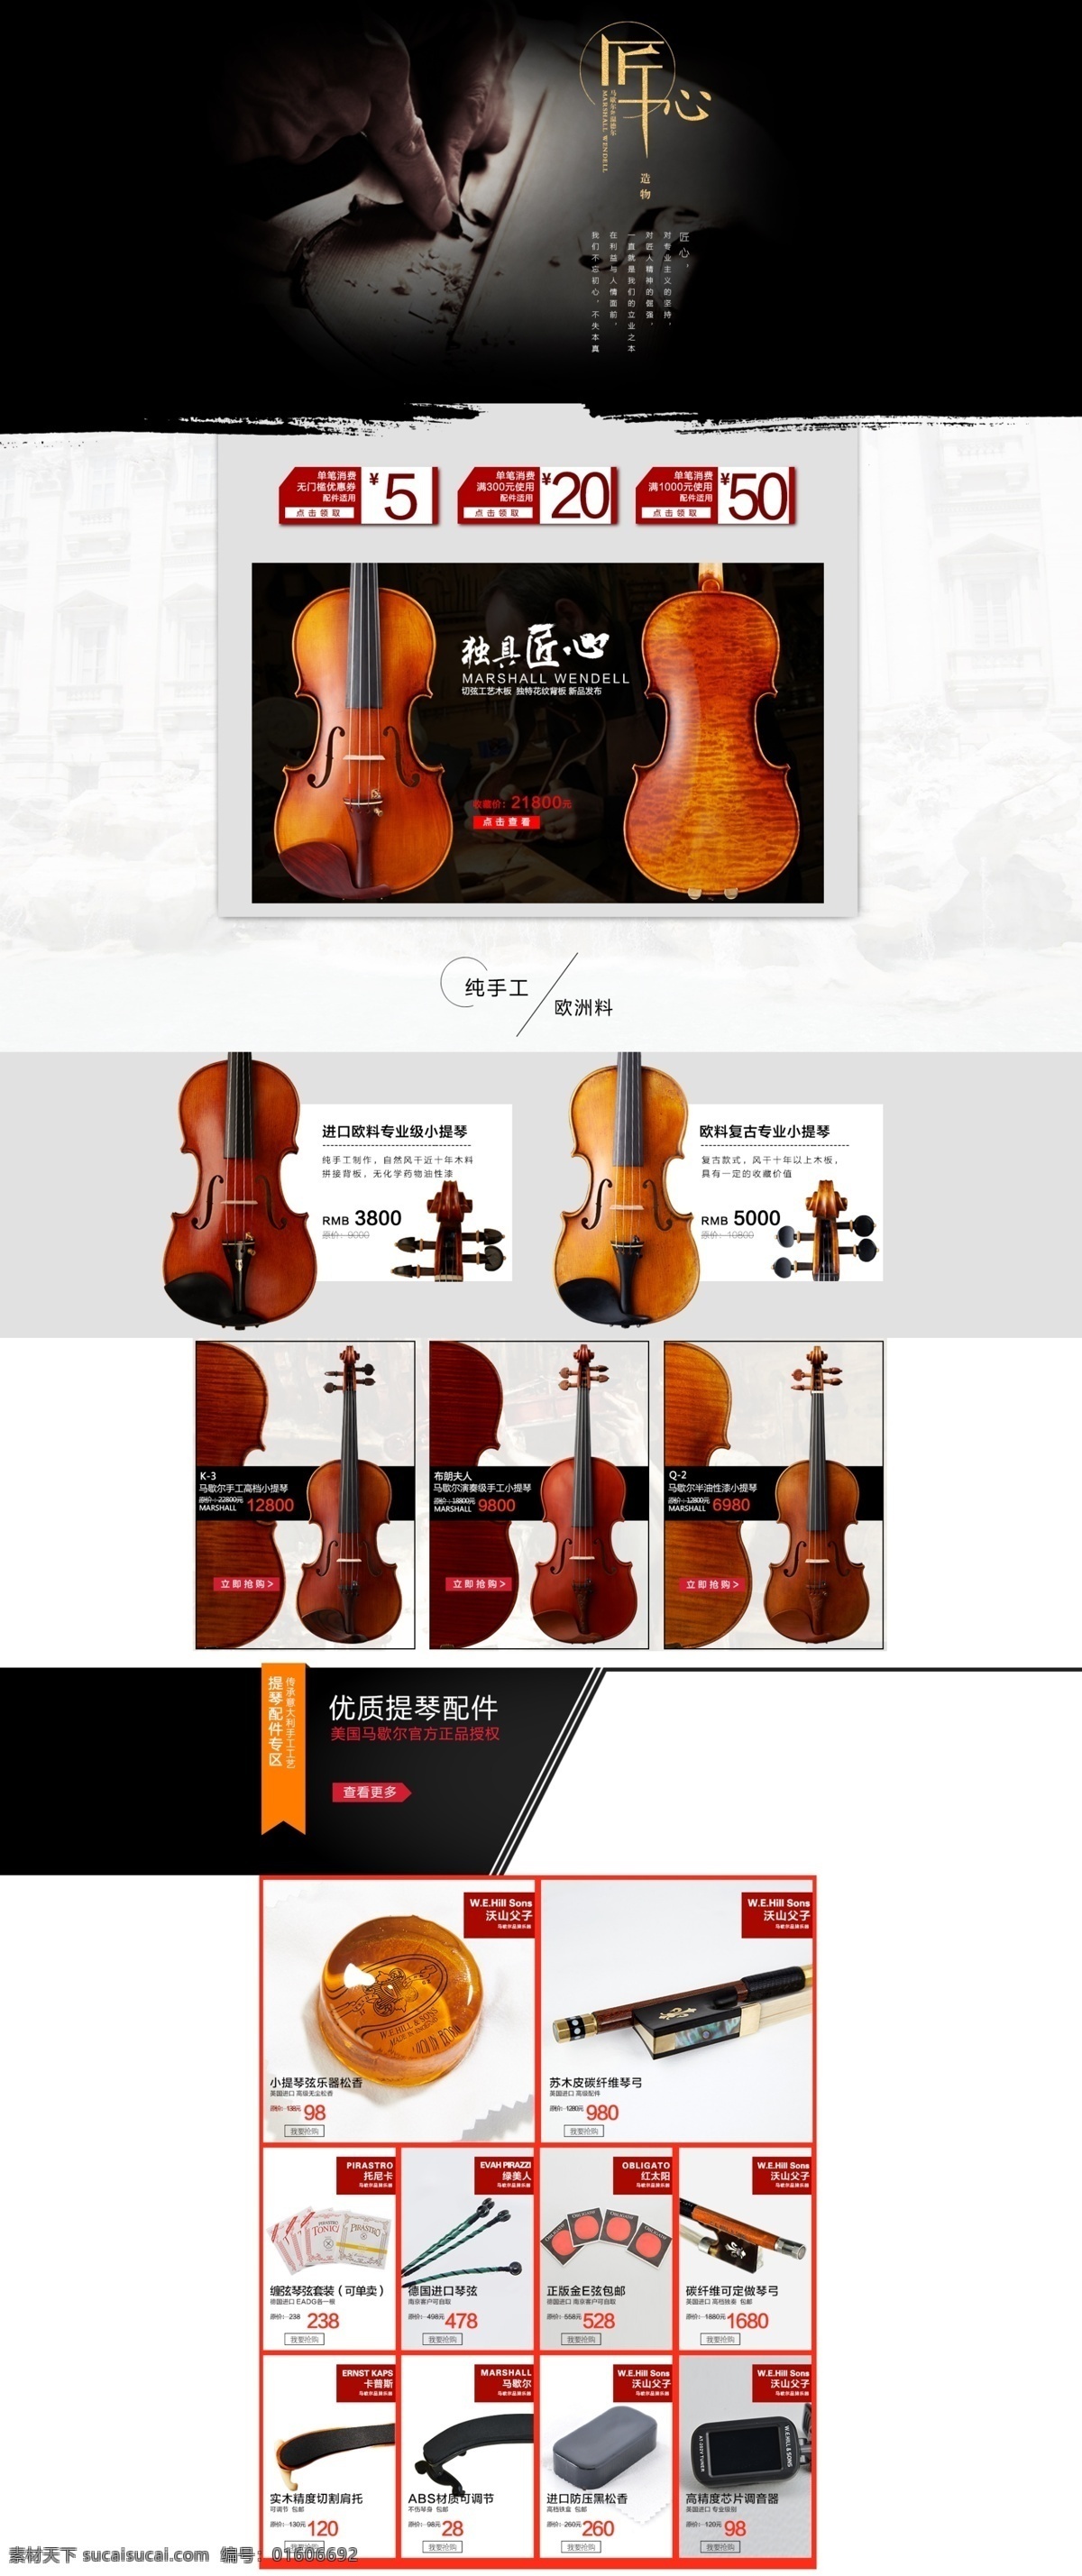 乐器 首页 小提琴 乐器首页 小提琴首页 首页模板